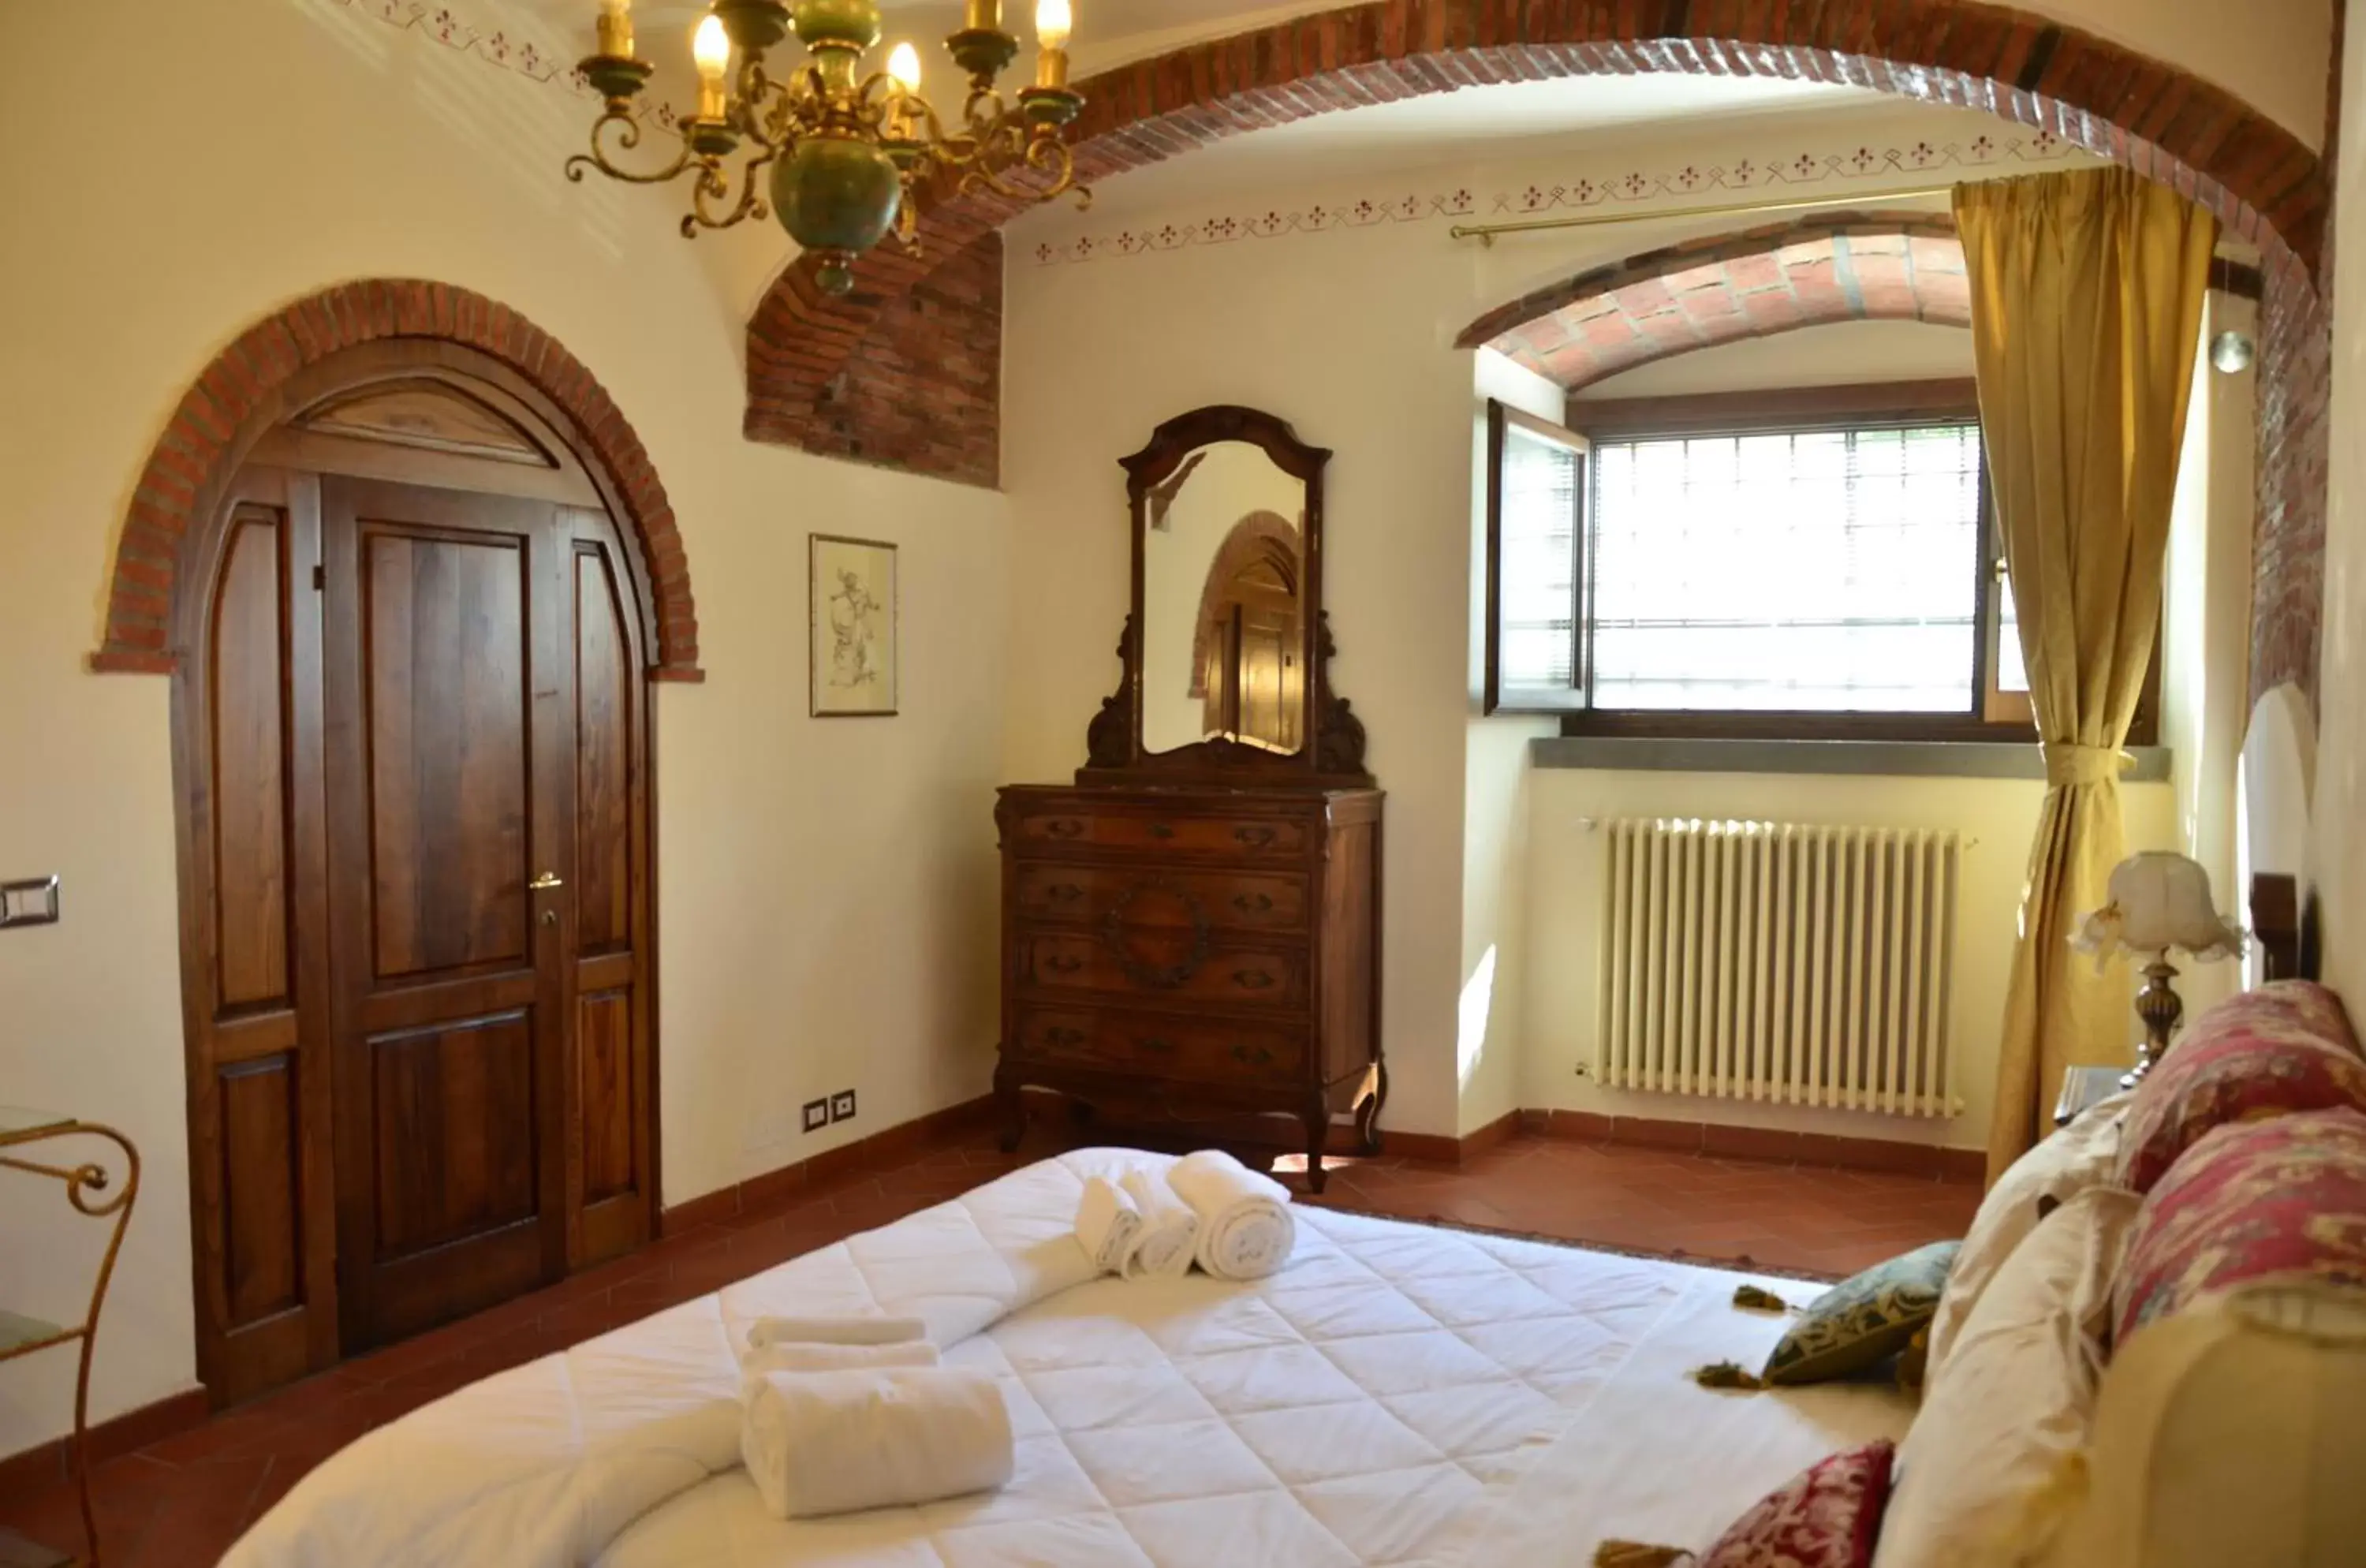 Bed, Room Photo in B&B Il Castello